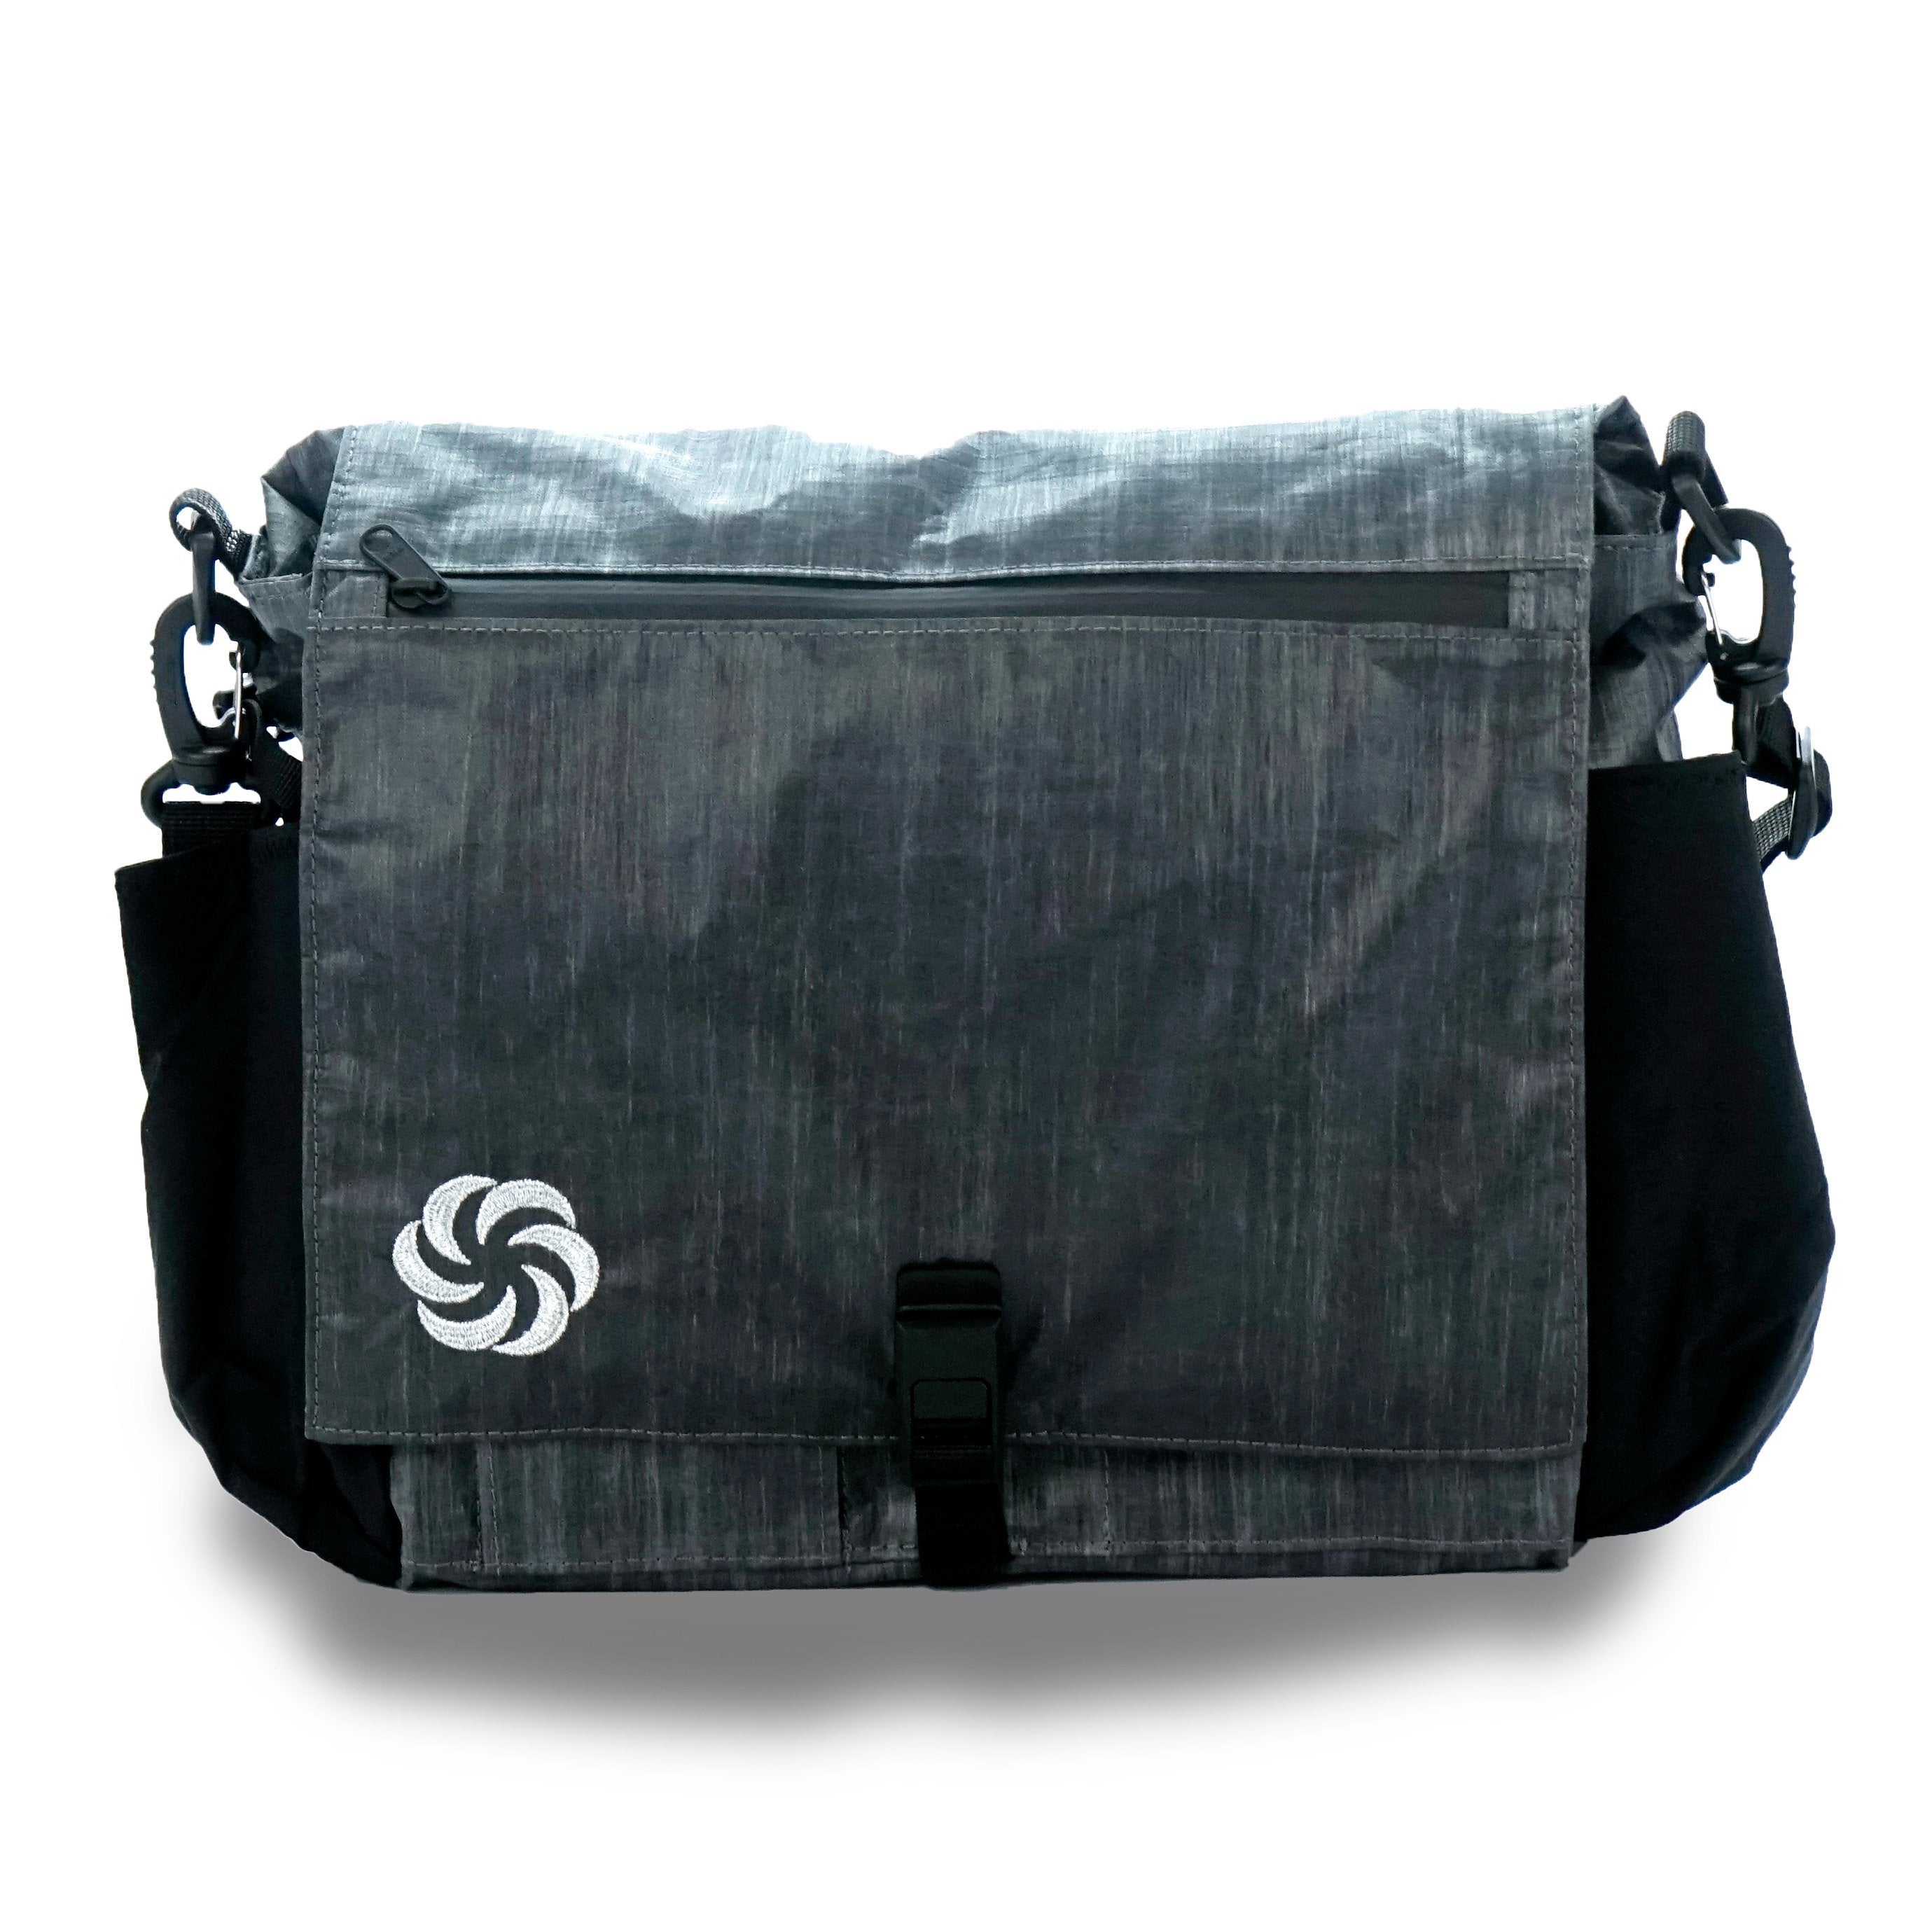 ePouch Zero-G Travel Bag